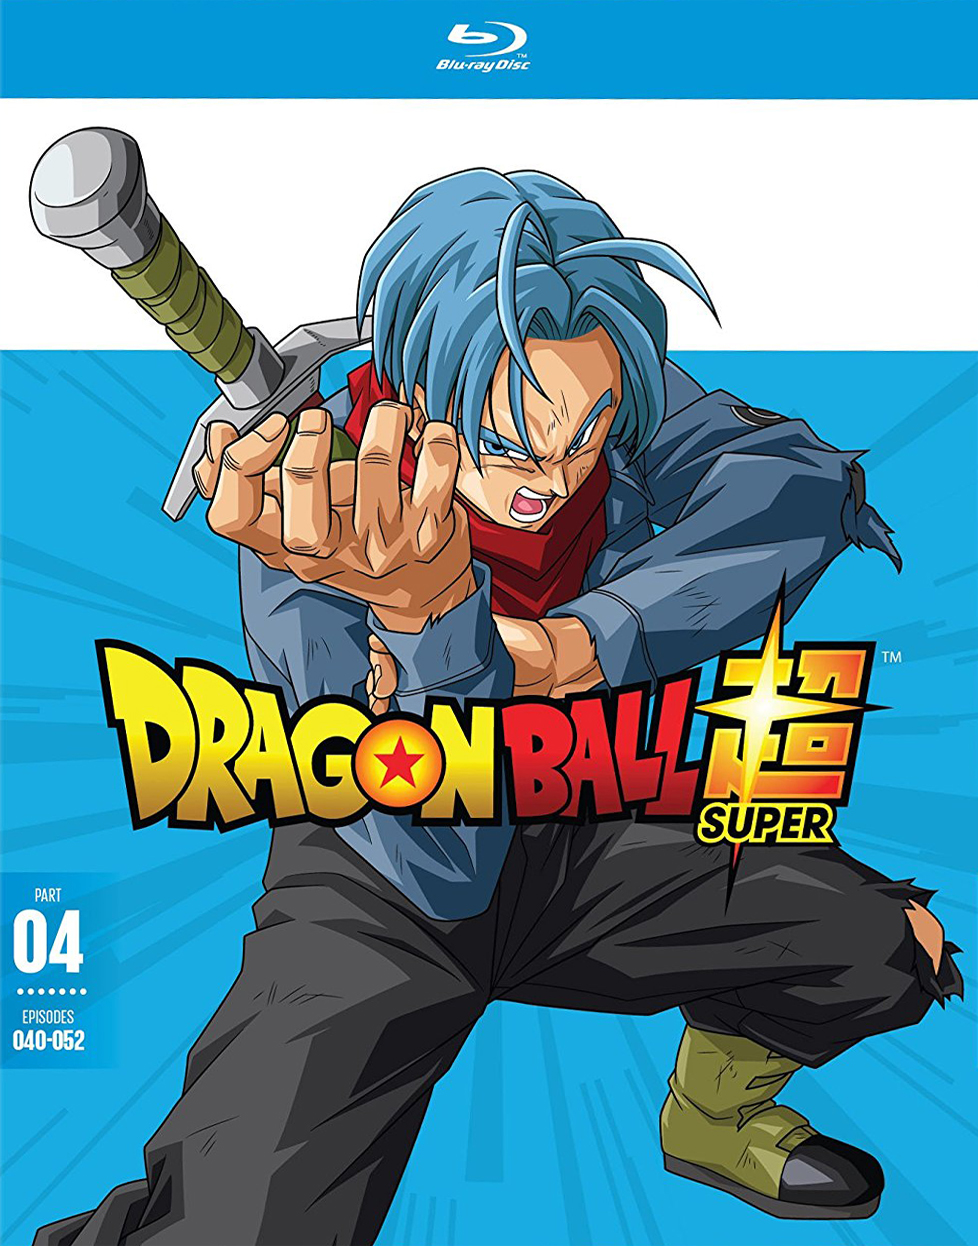 Dragon Ball Z: Season 1 [SteelBook] [Blu-ray] [4 Discs] - Best Buy